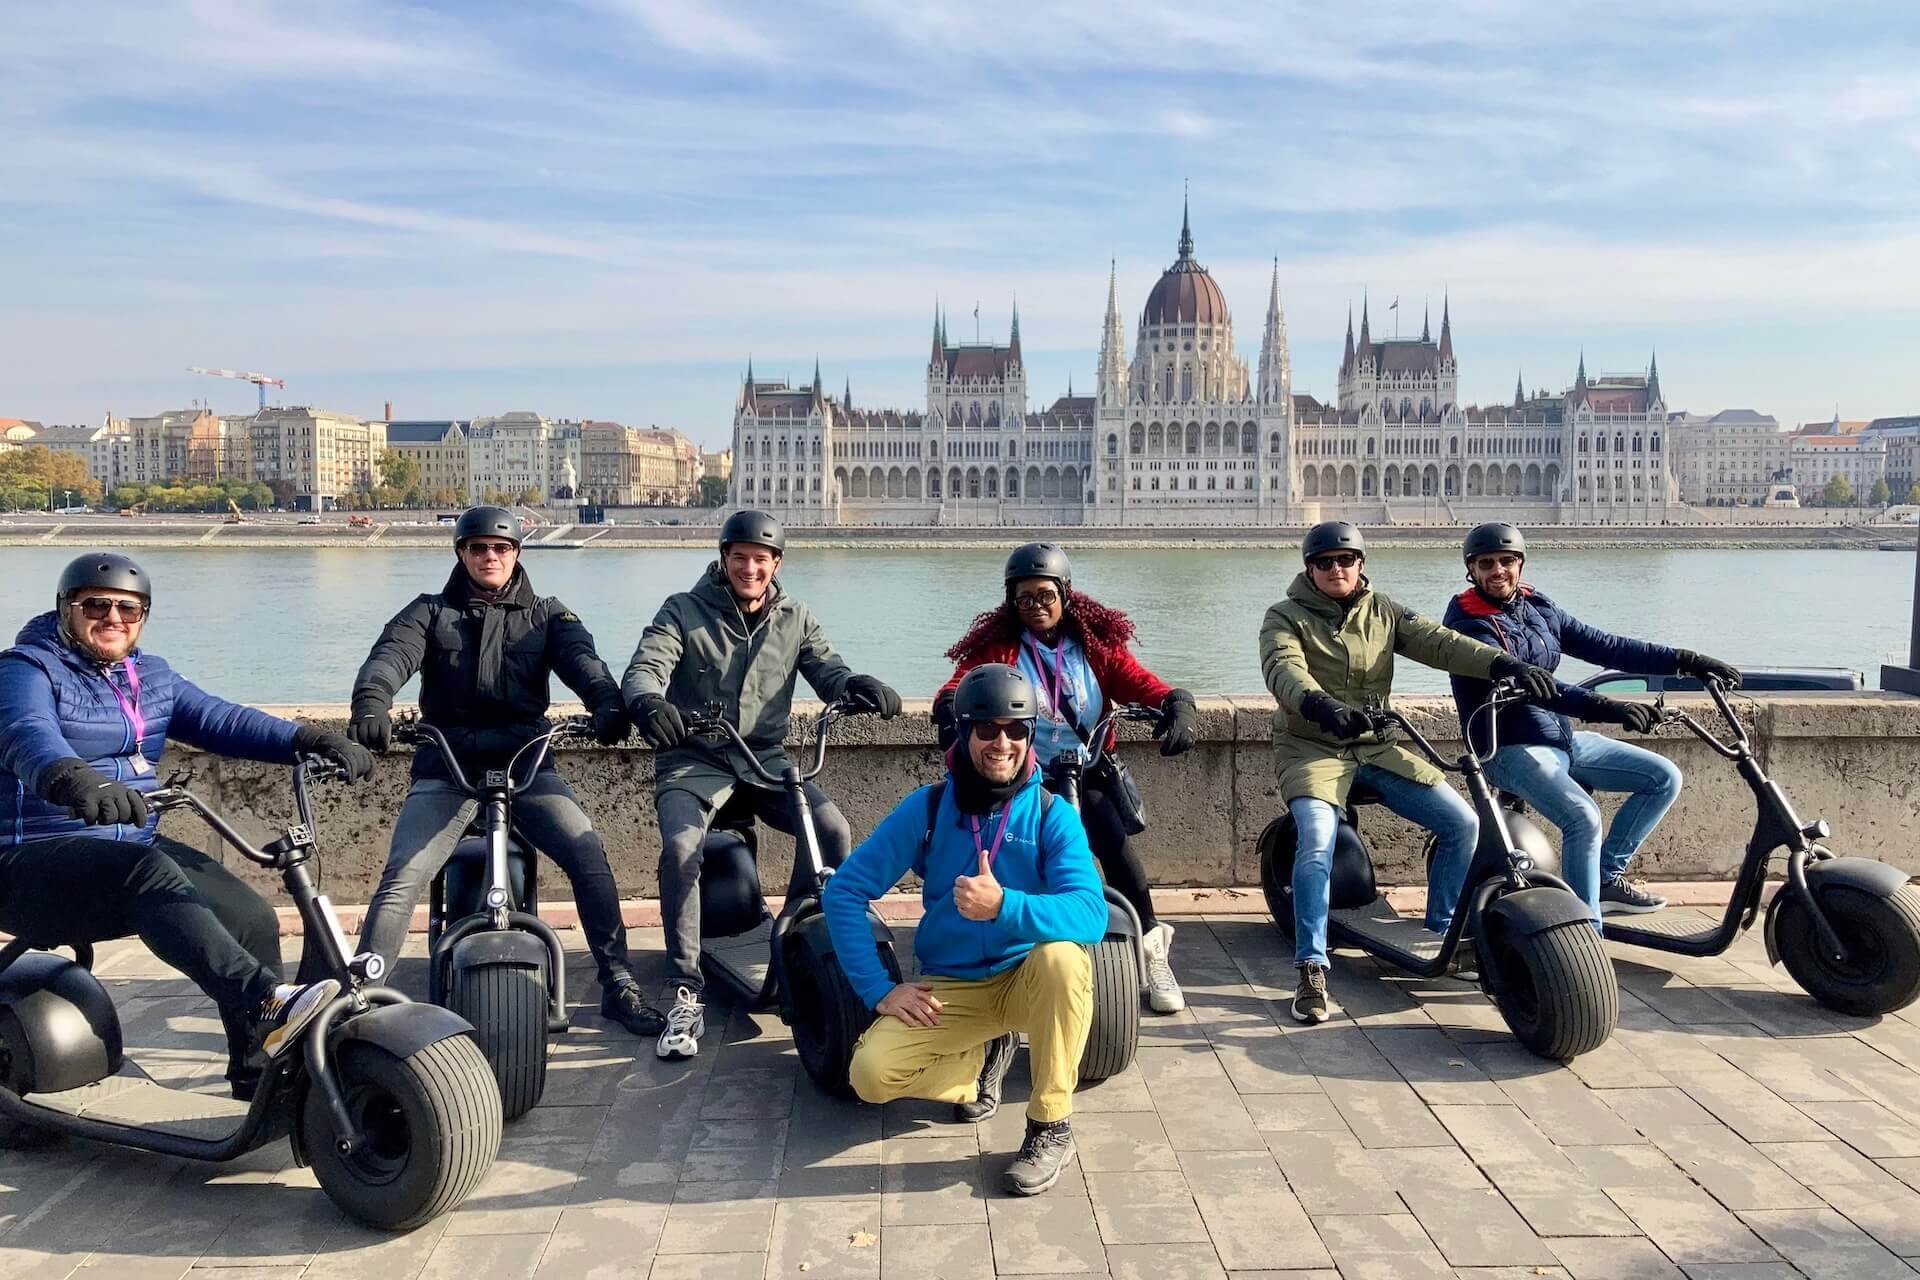 Des personnes lors d'une visite en scooter électrique posant avec le Parlement en arrière-plan.